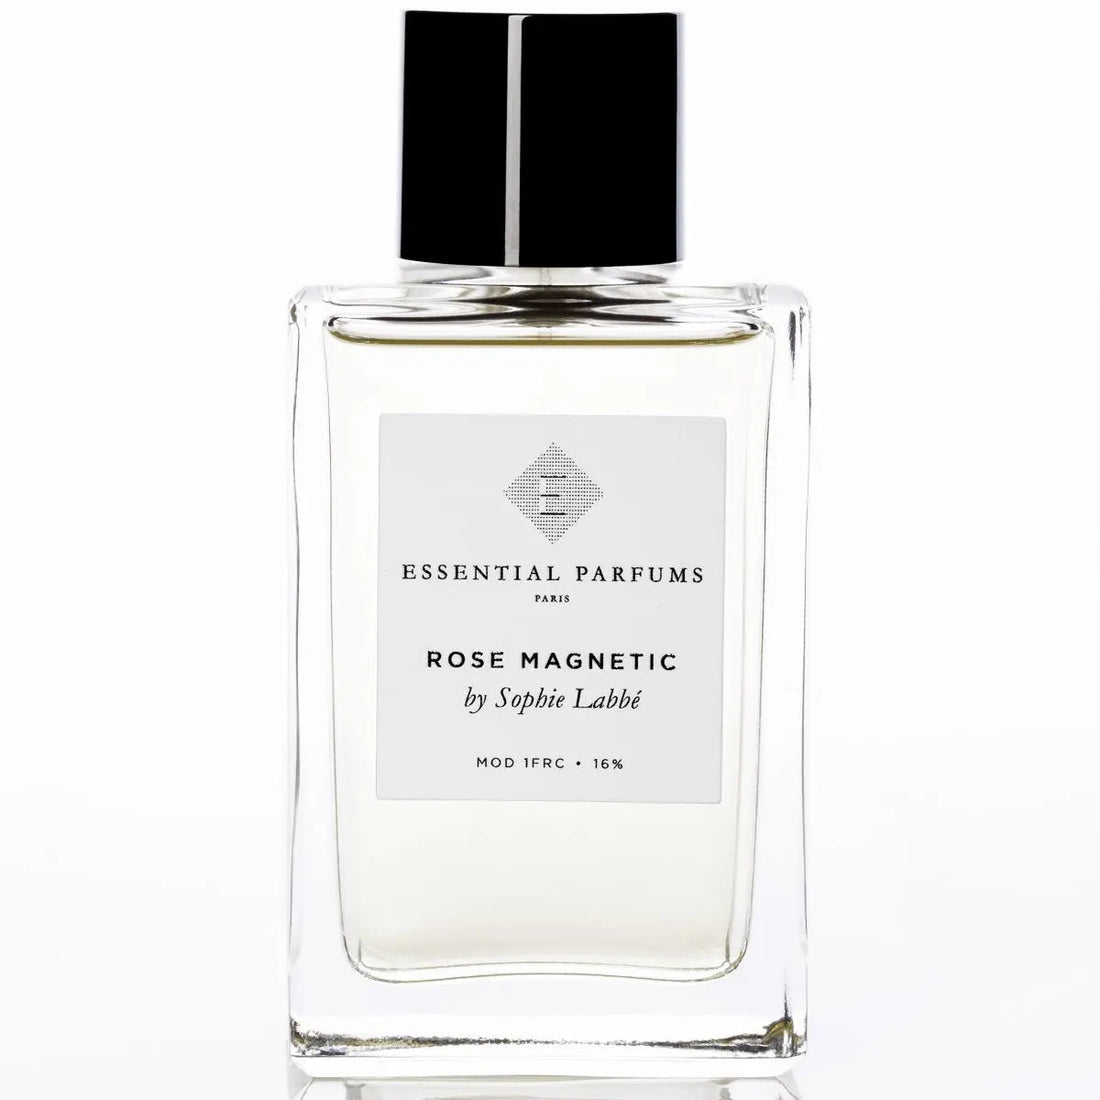 Essential parfums Rose Magnetic eau de parfum - 150 ml refill